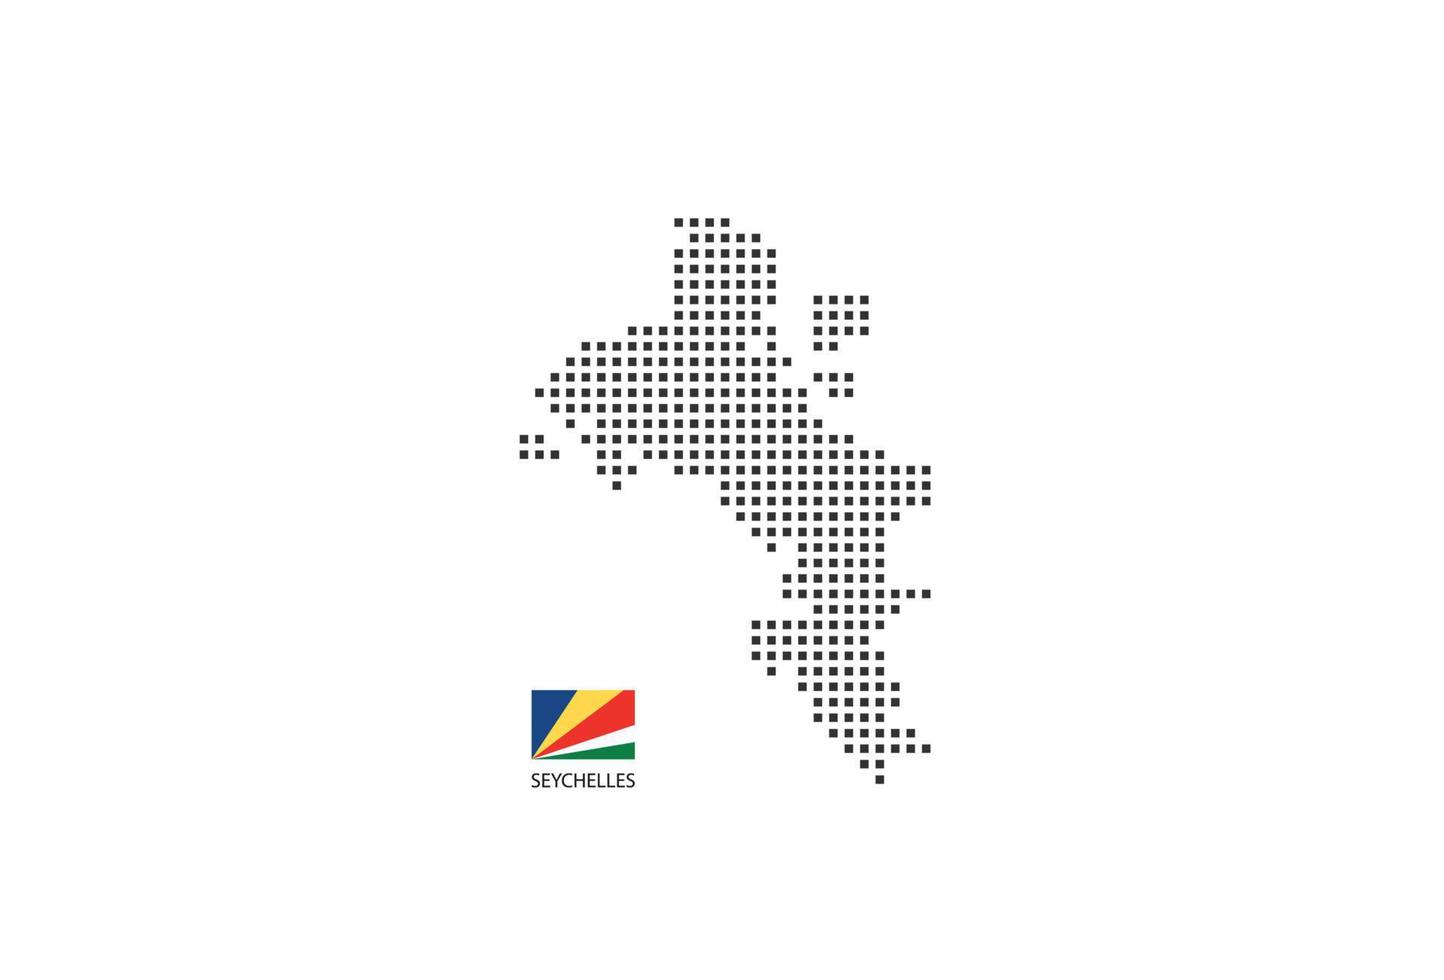 mapa pontilhado de pixel quadrado vetorial de seychelles isolado no fundo branco com bandeira de seychelles. vetor